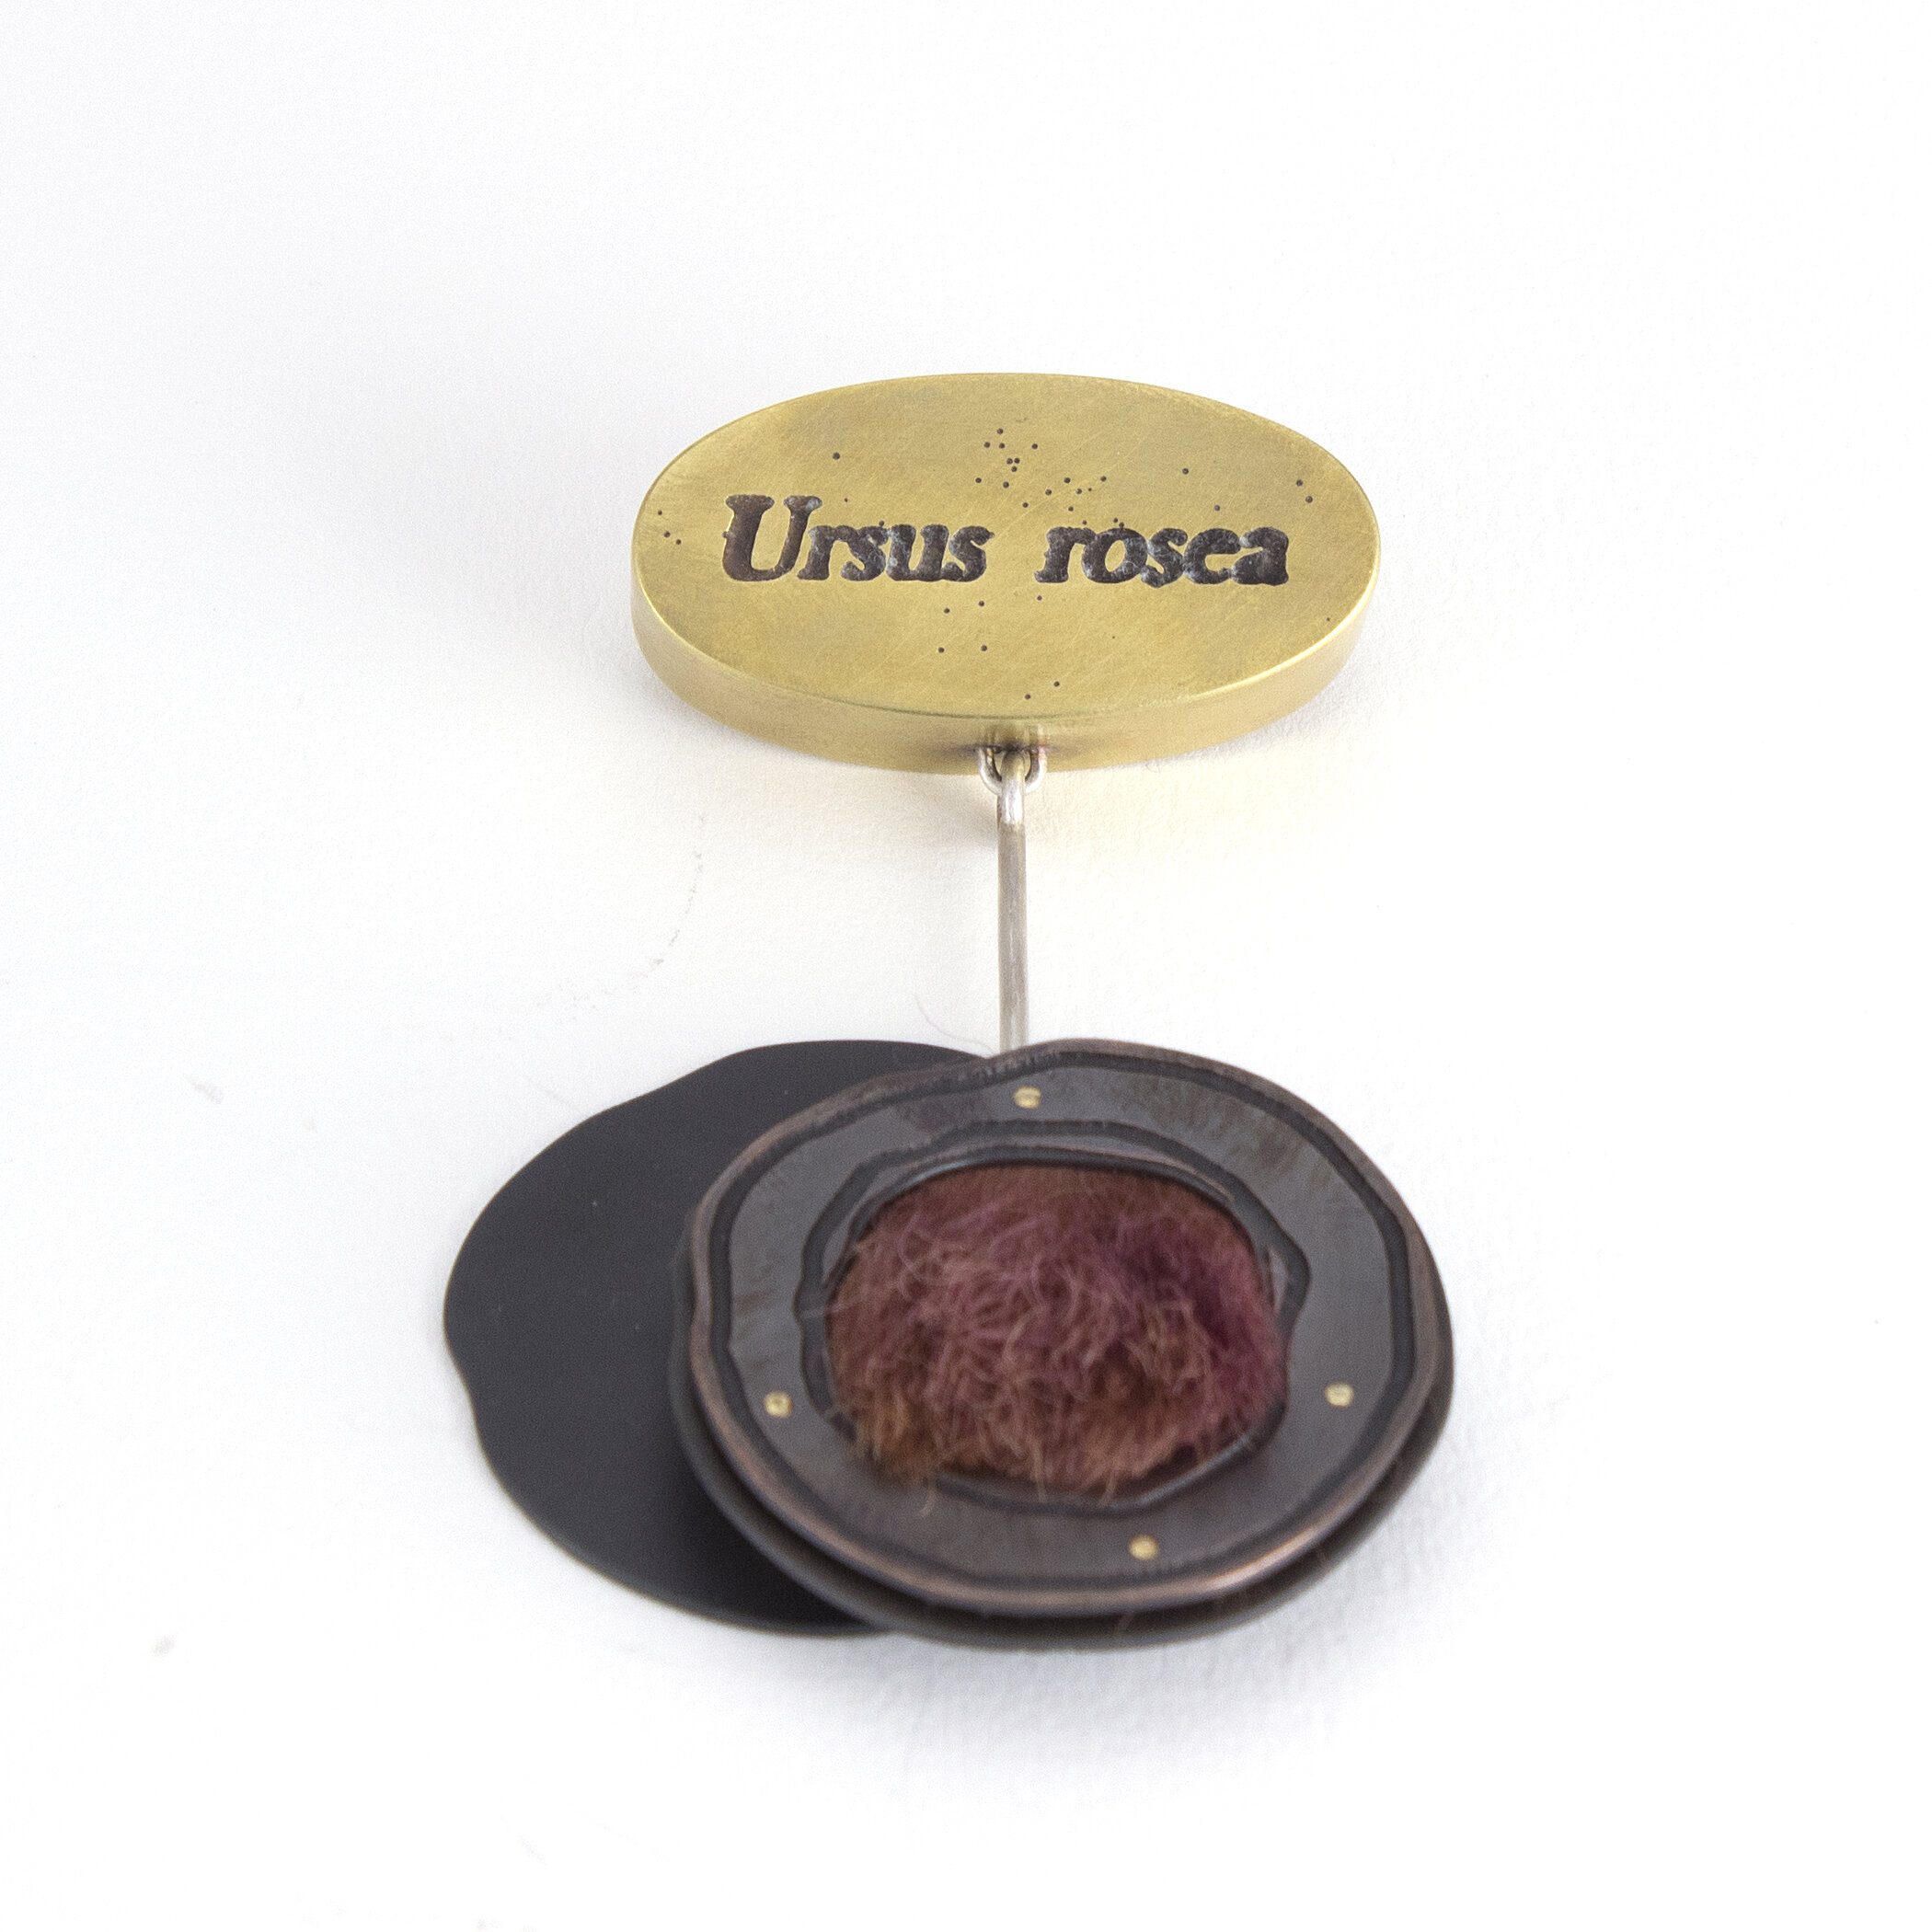 Ursus rosea